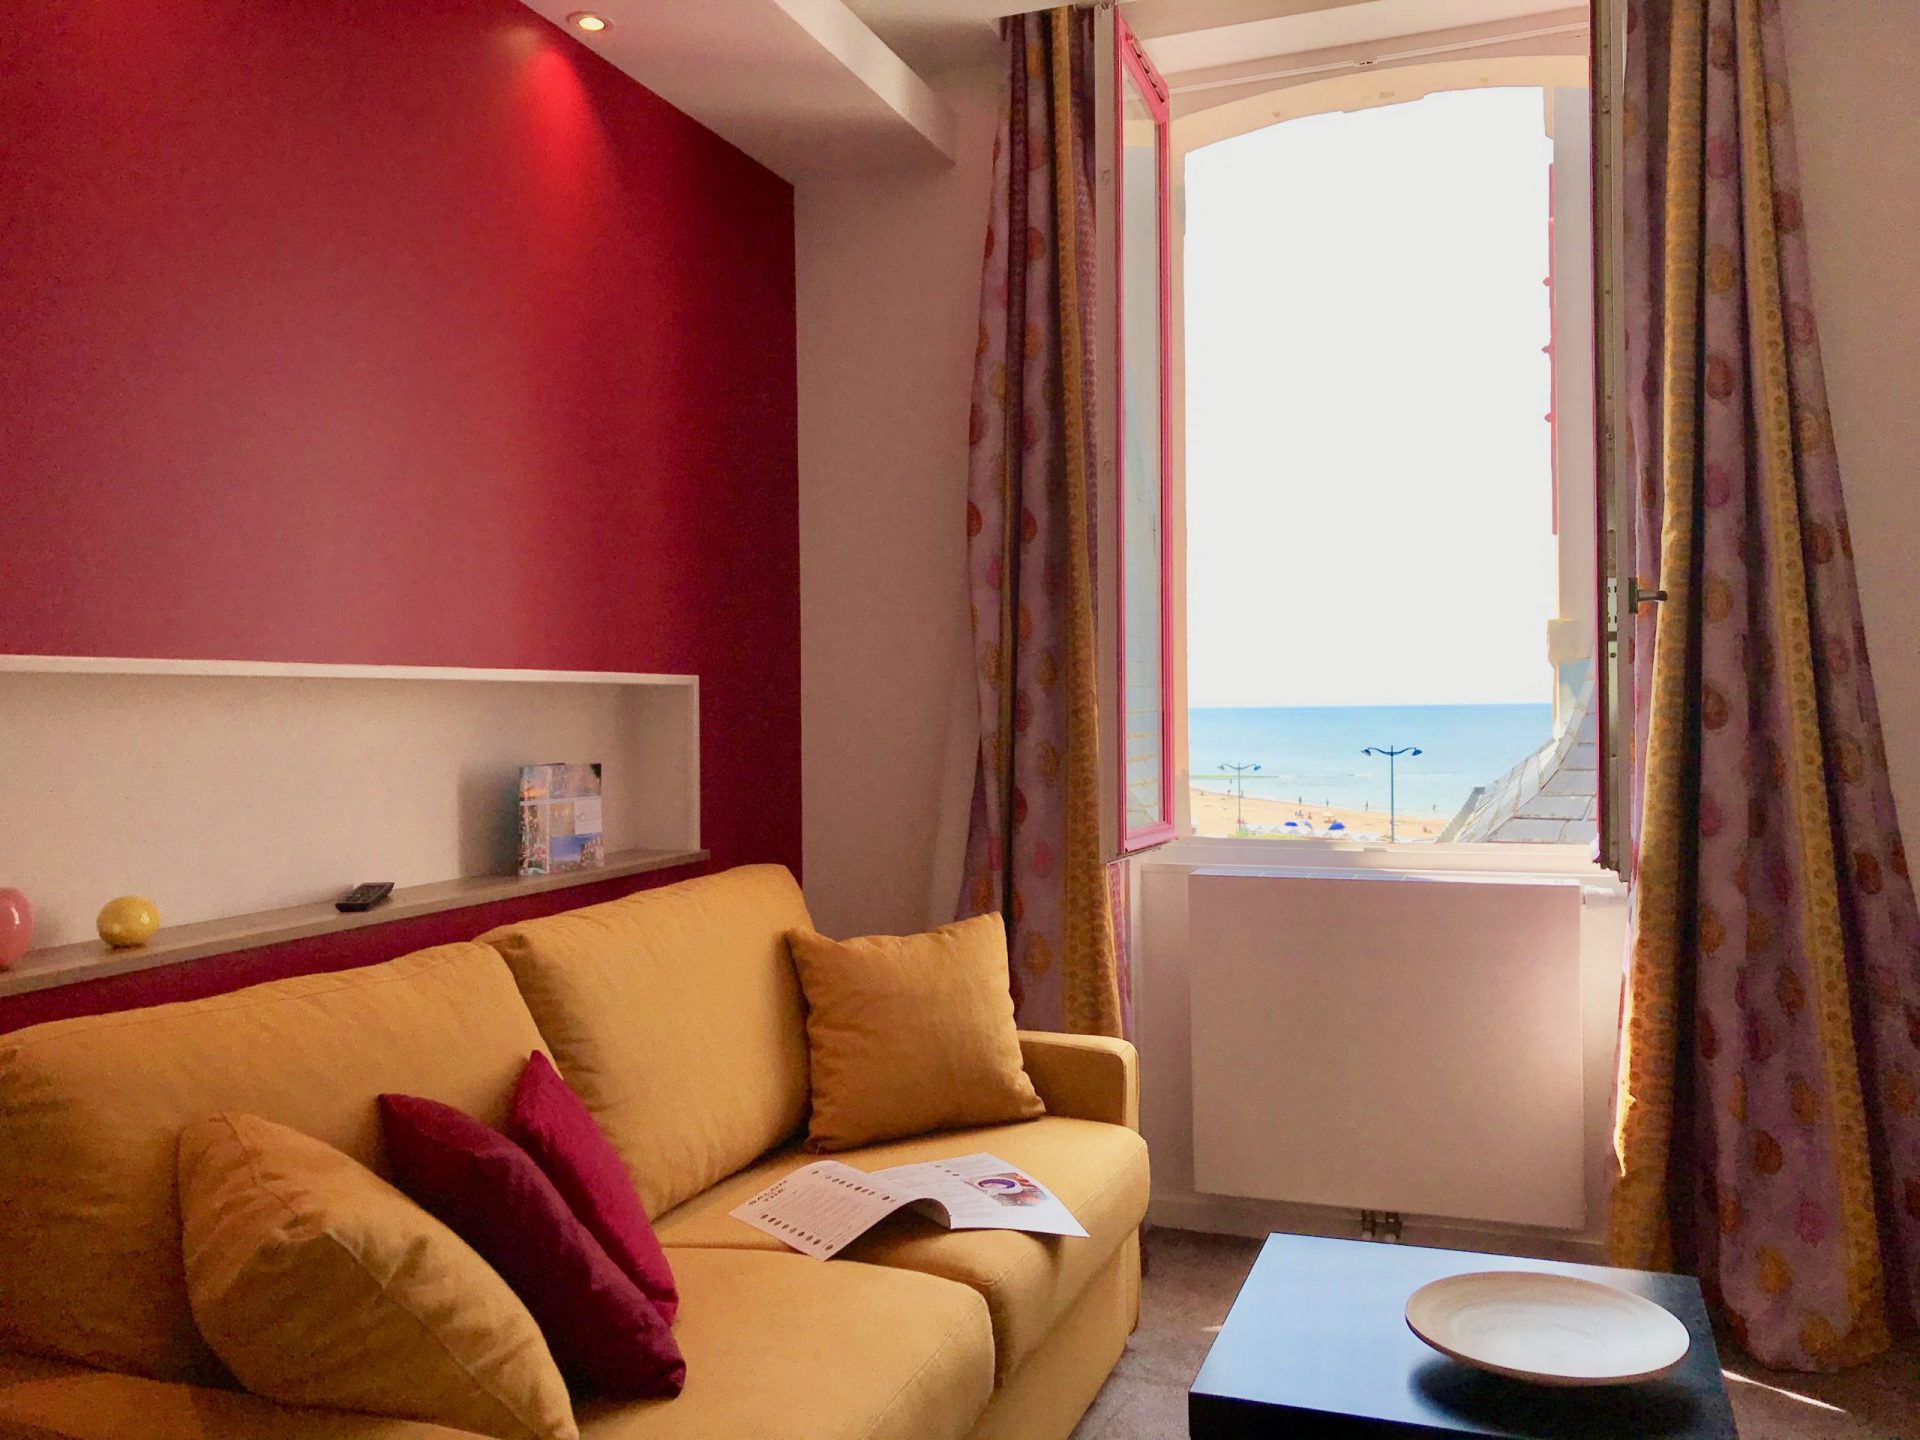 Hôtel Outre-Mer (Villa Le couchant) - Salon vue sur mer de la Suite Cabourg mon amour